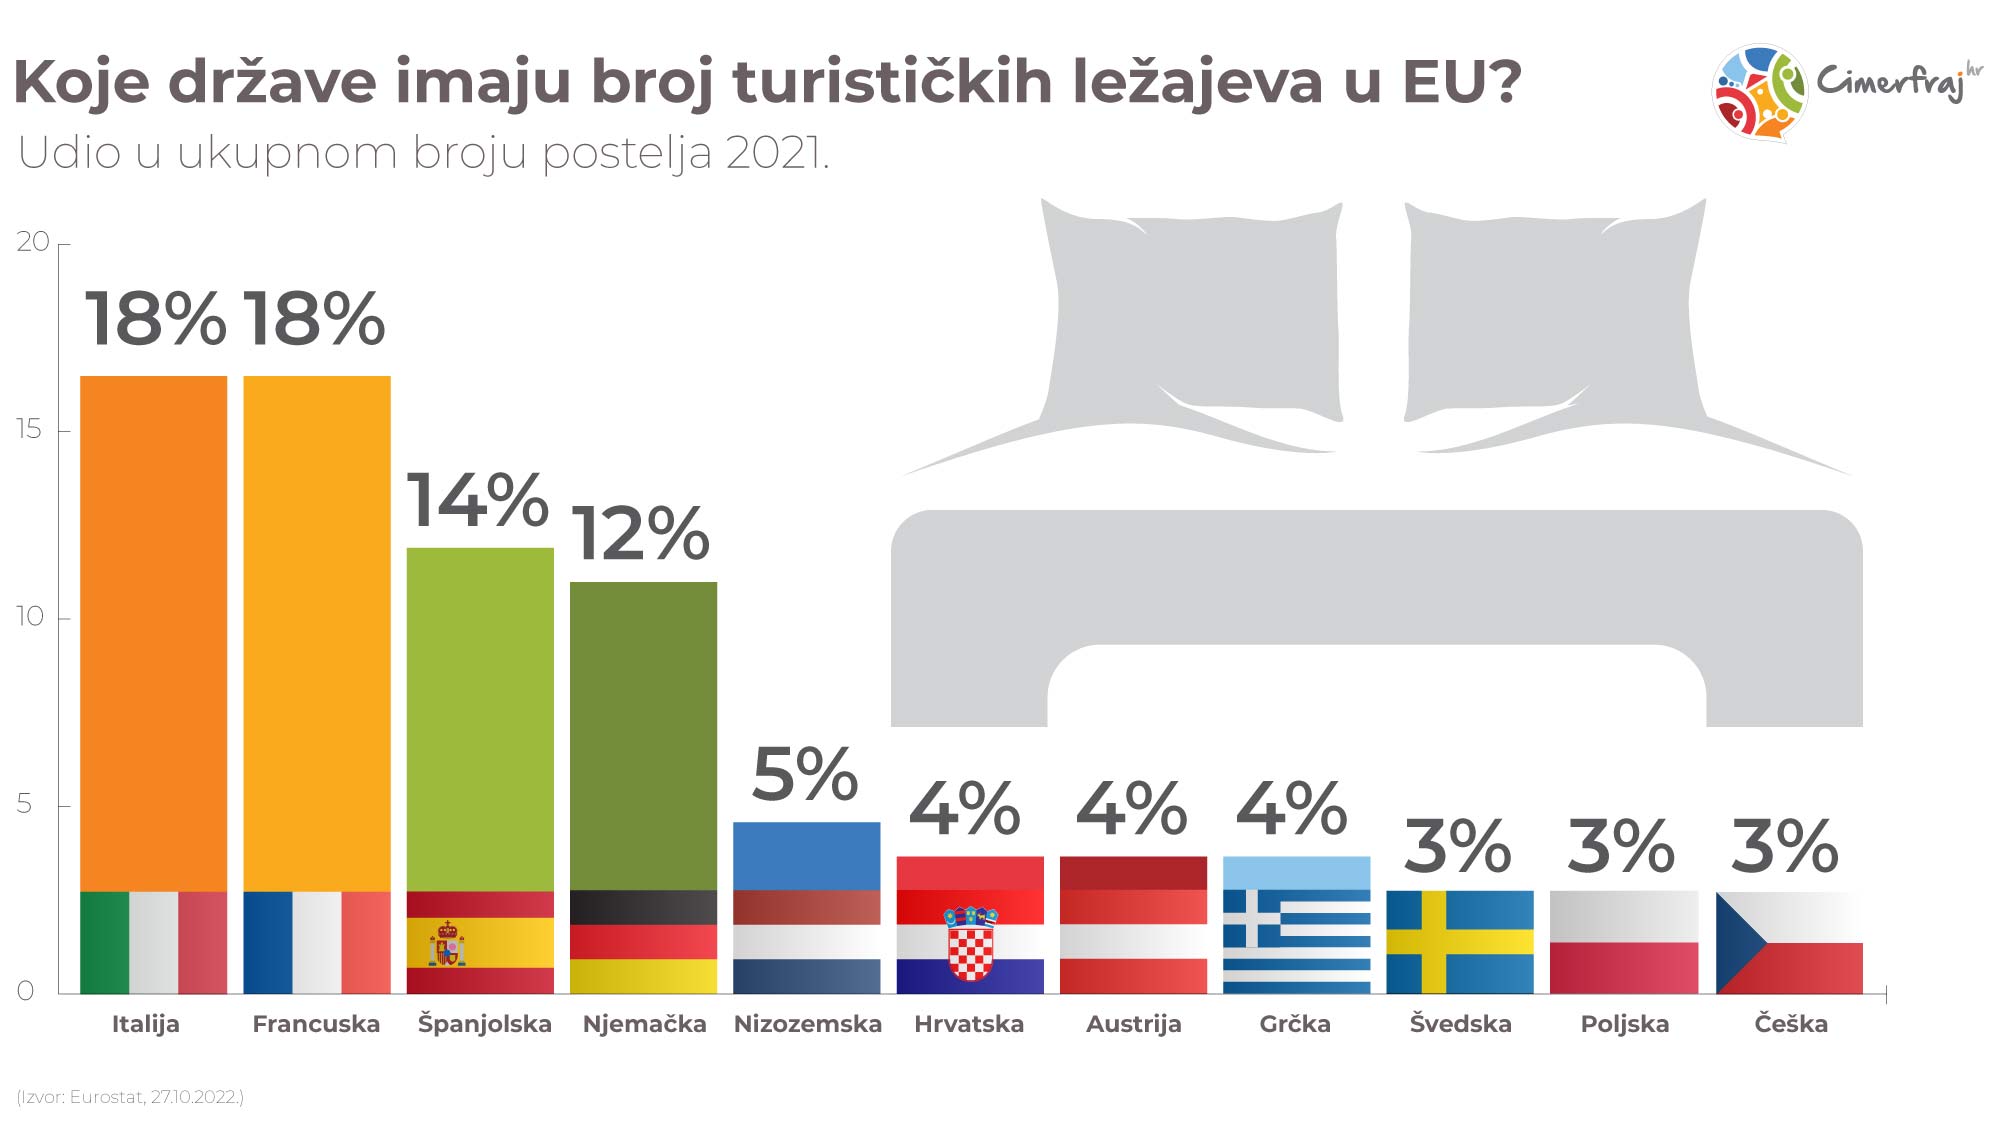 Infografika - udio broja ležajeva po državama EU